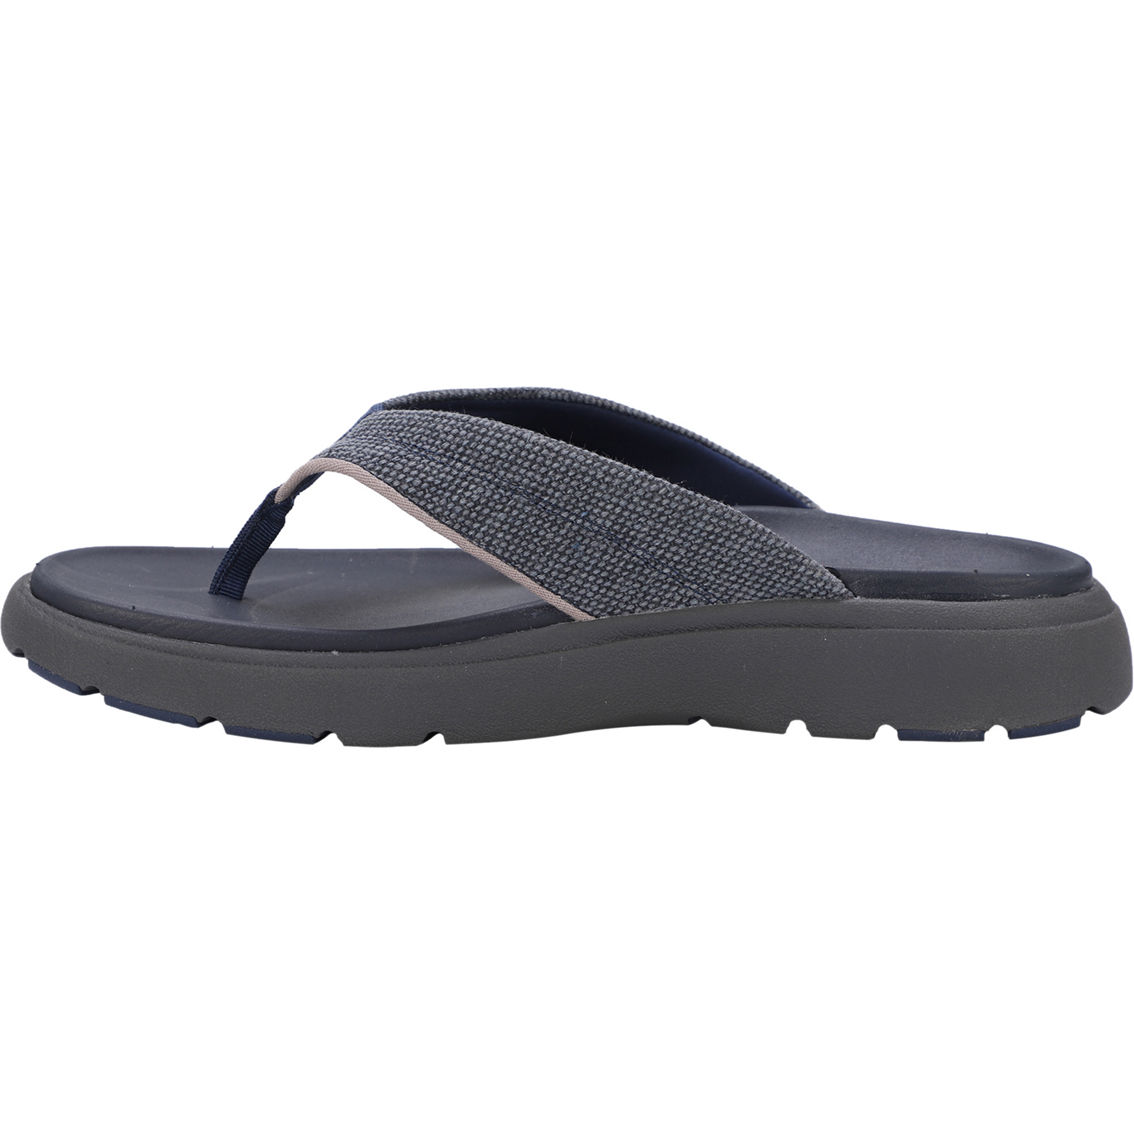 Lamo Lyle Comfort Flip Flop Sandals - Image 3 of 9